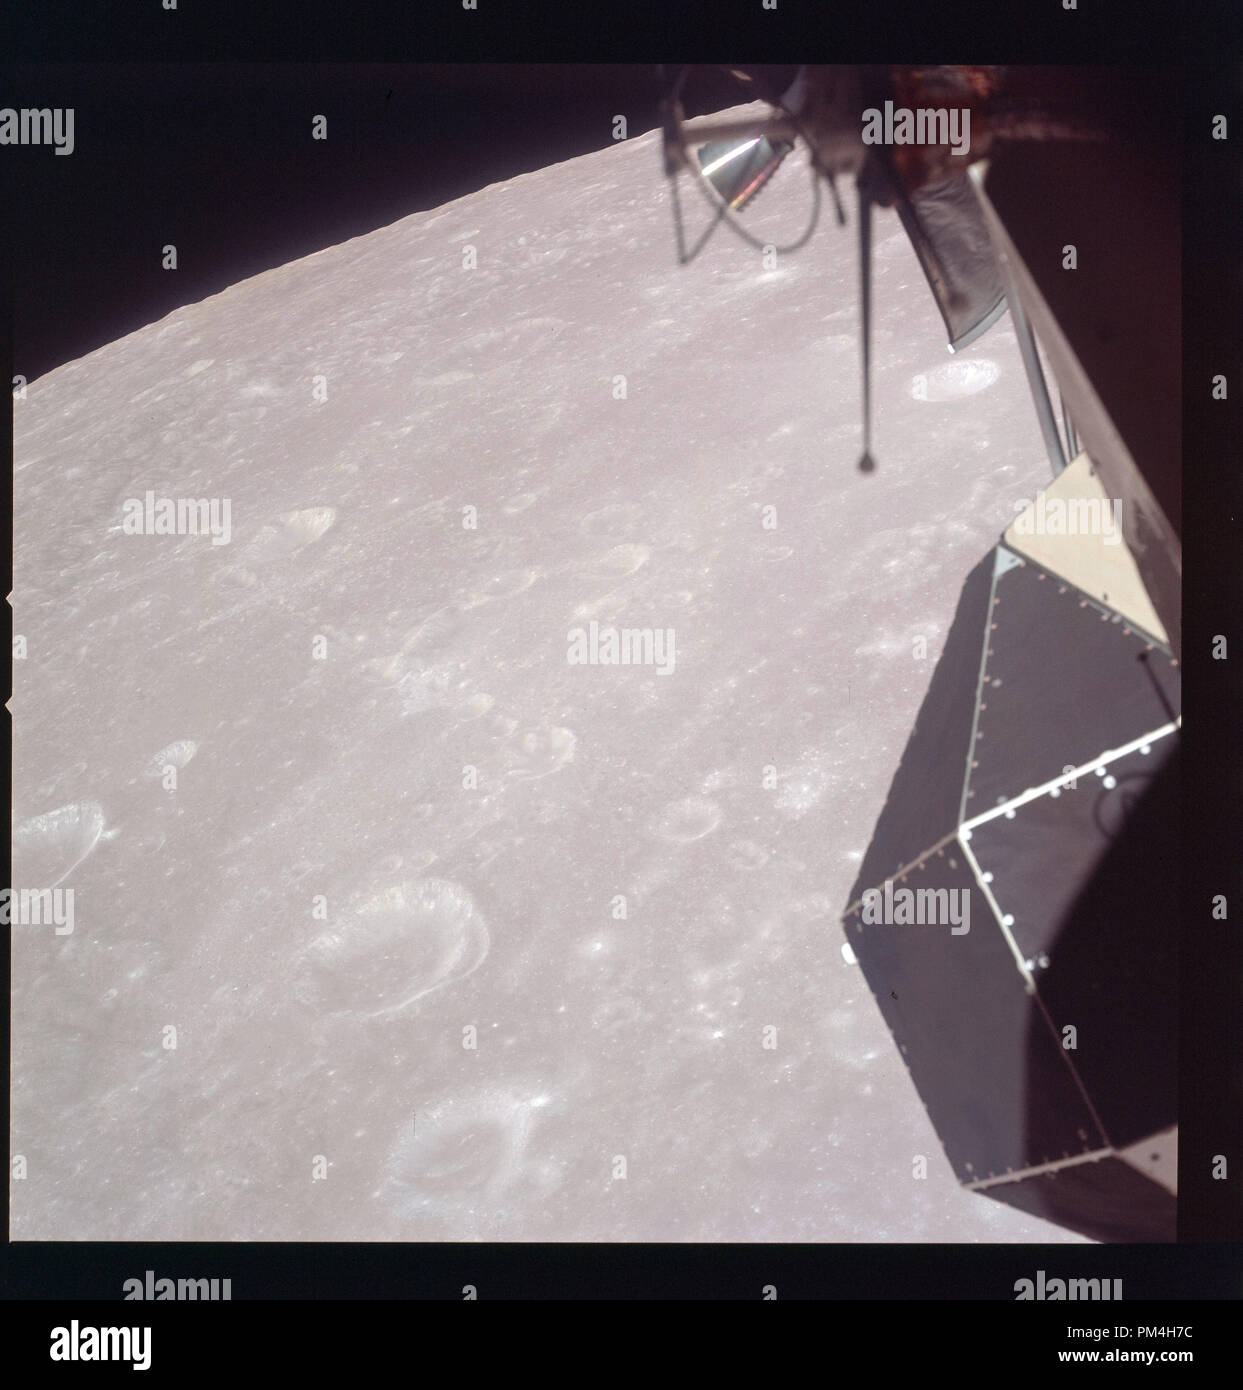 Apollo 11 Auf dem Mond während der Juli 1969 Geschichte Die Reise auf den Mond und die anschließende Mondlandung. Datei Referenz Nr. 1003 240 THA Stockfoto